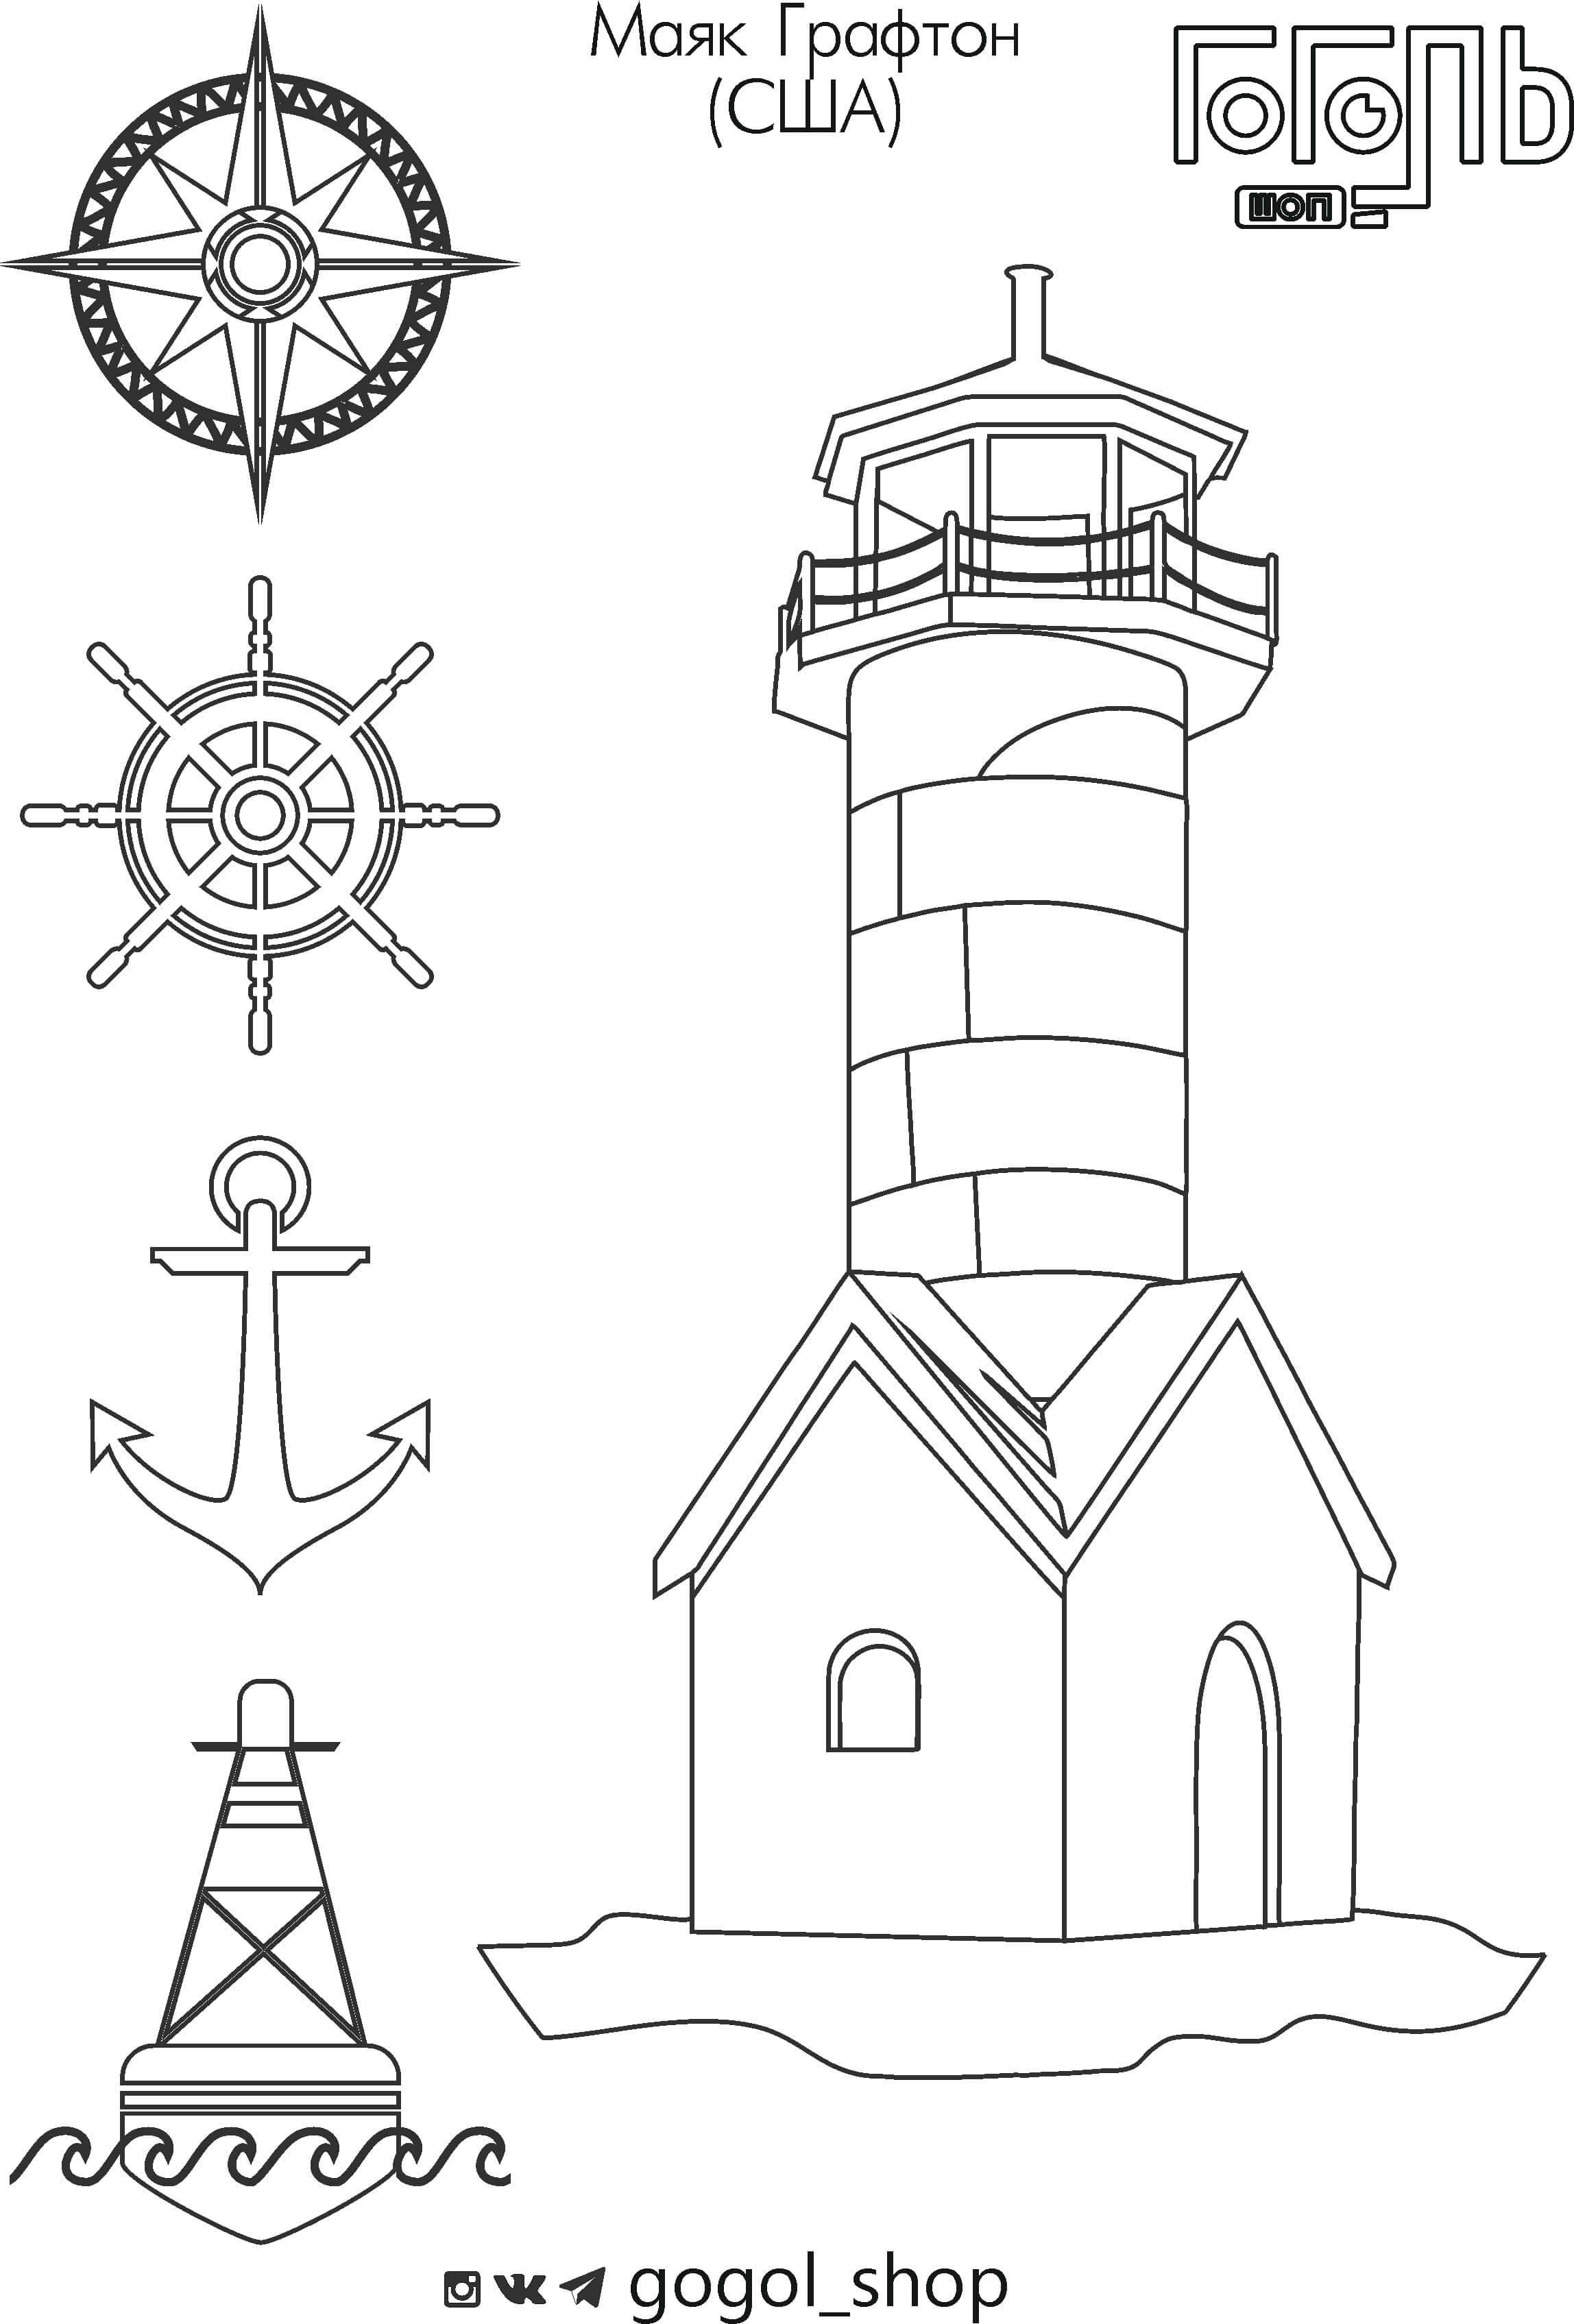 Макет маяка на бумаге для печати